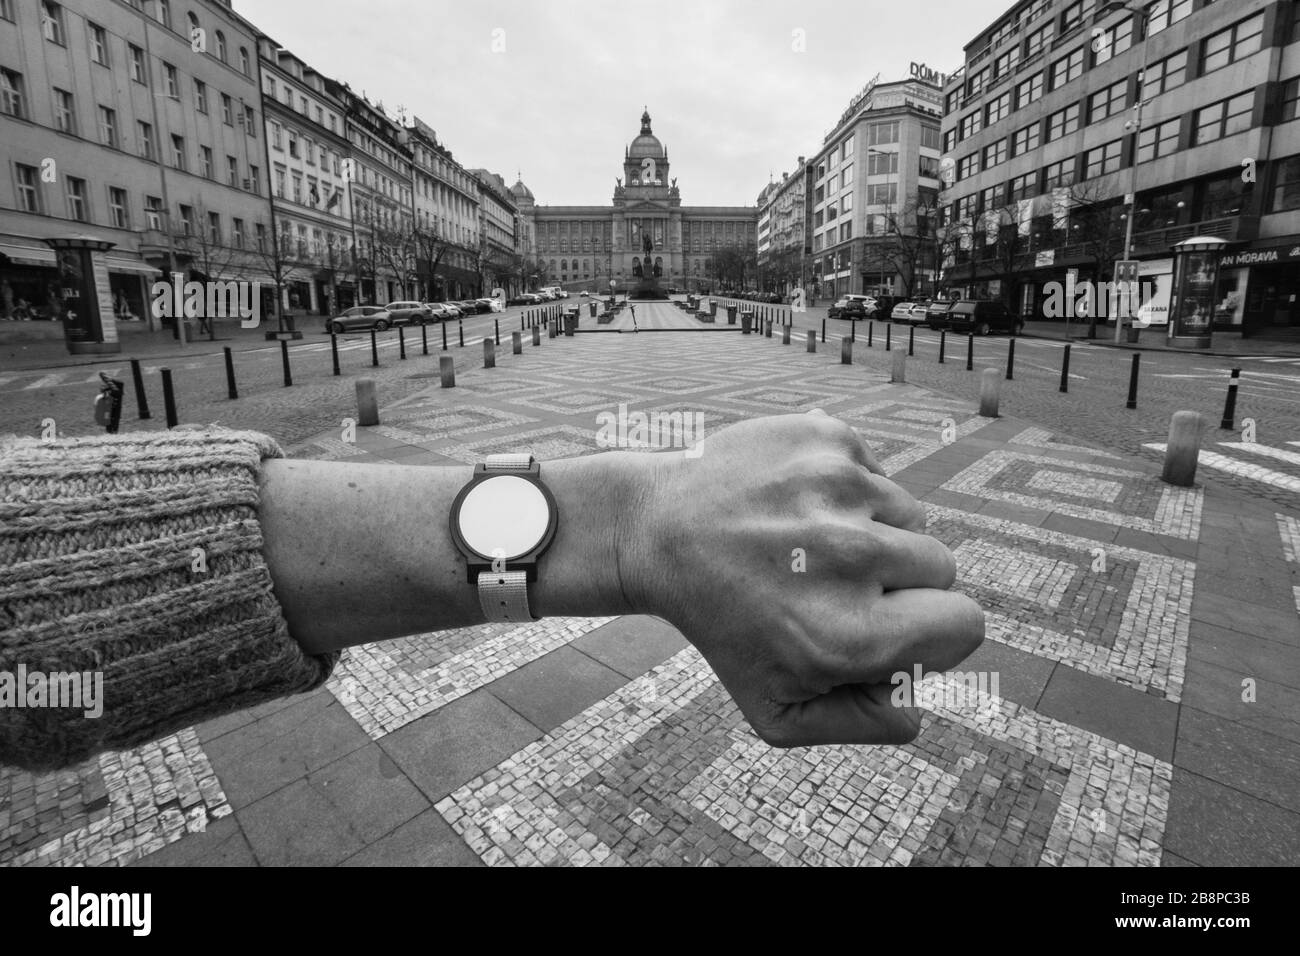 Fast desolater Wenzelsplatz (Václavské náměstí) in Prag, Tschechien, dargestellt um 13.27 Uhr während der Pandemie-Quarantäne des COVID-19-Coronavirus am 19. März 2020. Das Foto ist eine Hommage an das berühmte Foto des tschechoslowakische Fotografen Josef Koudelka, das während der sowjetischen Invasion in die Tschechoslowakei im August 1968 am selben Ort abgebildet wurde. Die handlose Uhr auf der linken Seite des Fotografen ist tatsächlich ein Eingangsspip zum Aquacentrum Šutka, der während der Quarantäne nutzlos ist, da alle Schwimmbäder aufgrund des Ausbruchs des Corona-Virus auch unbegrenzt geschlossen sind. Stockfoto